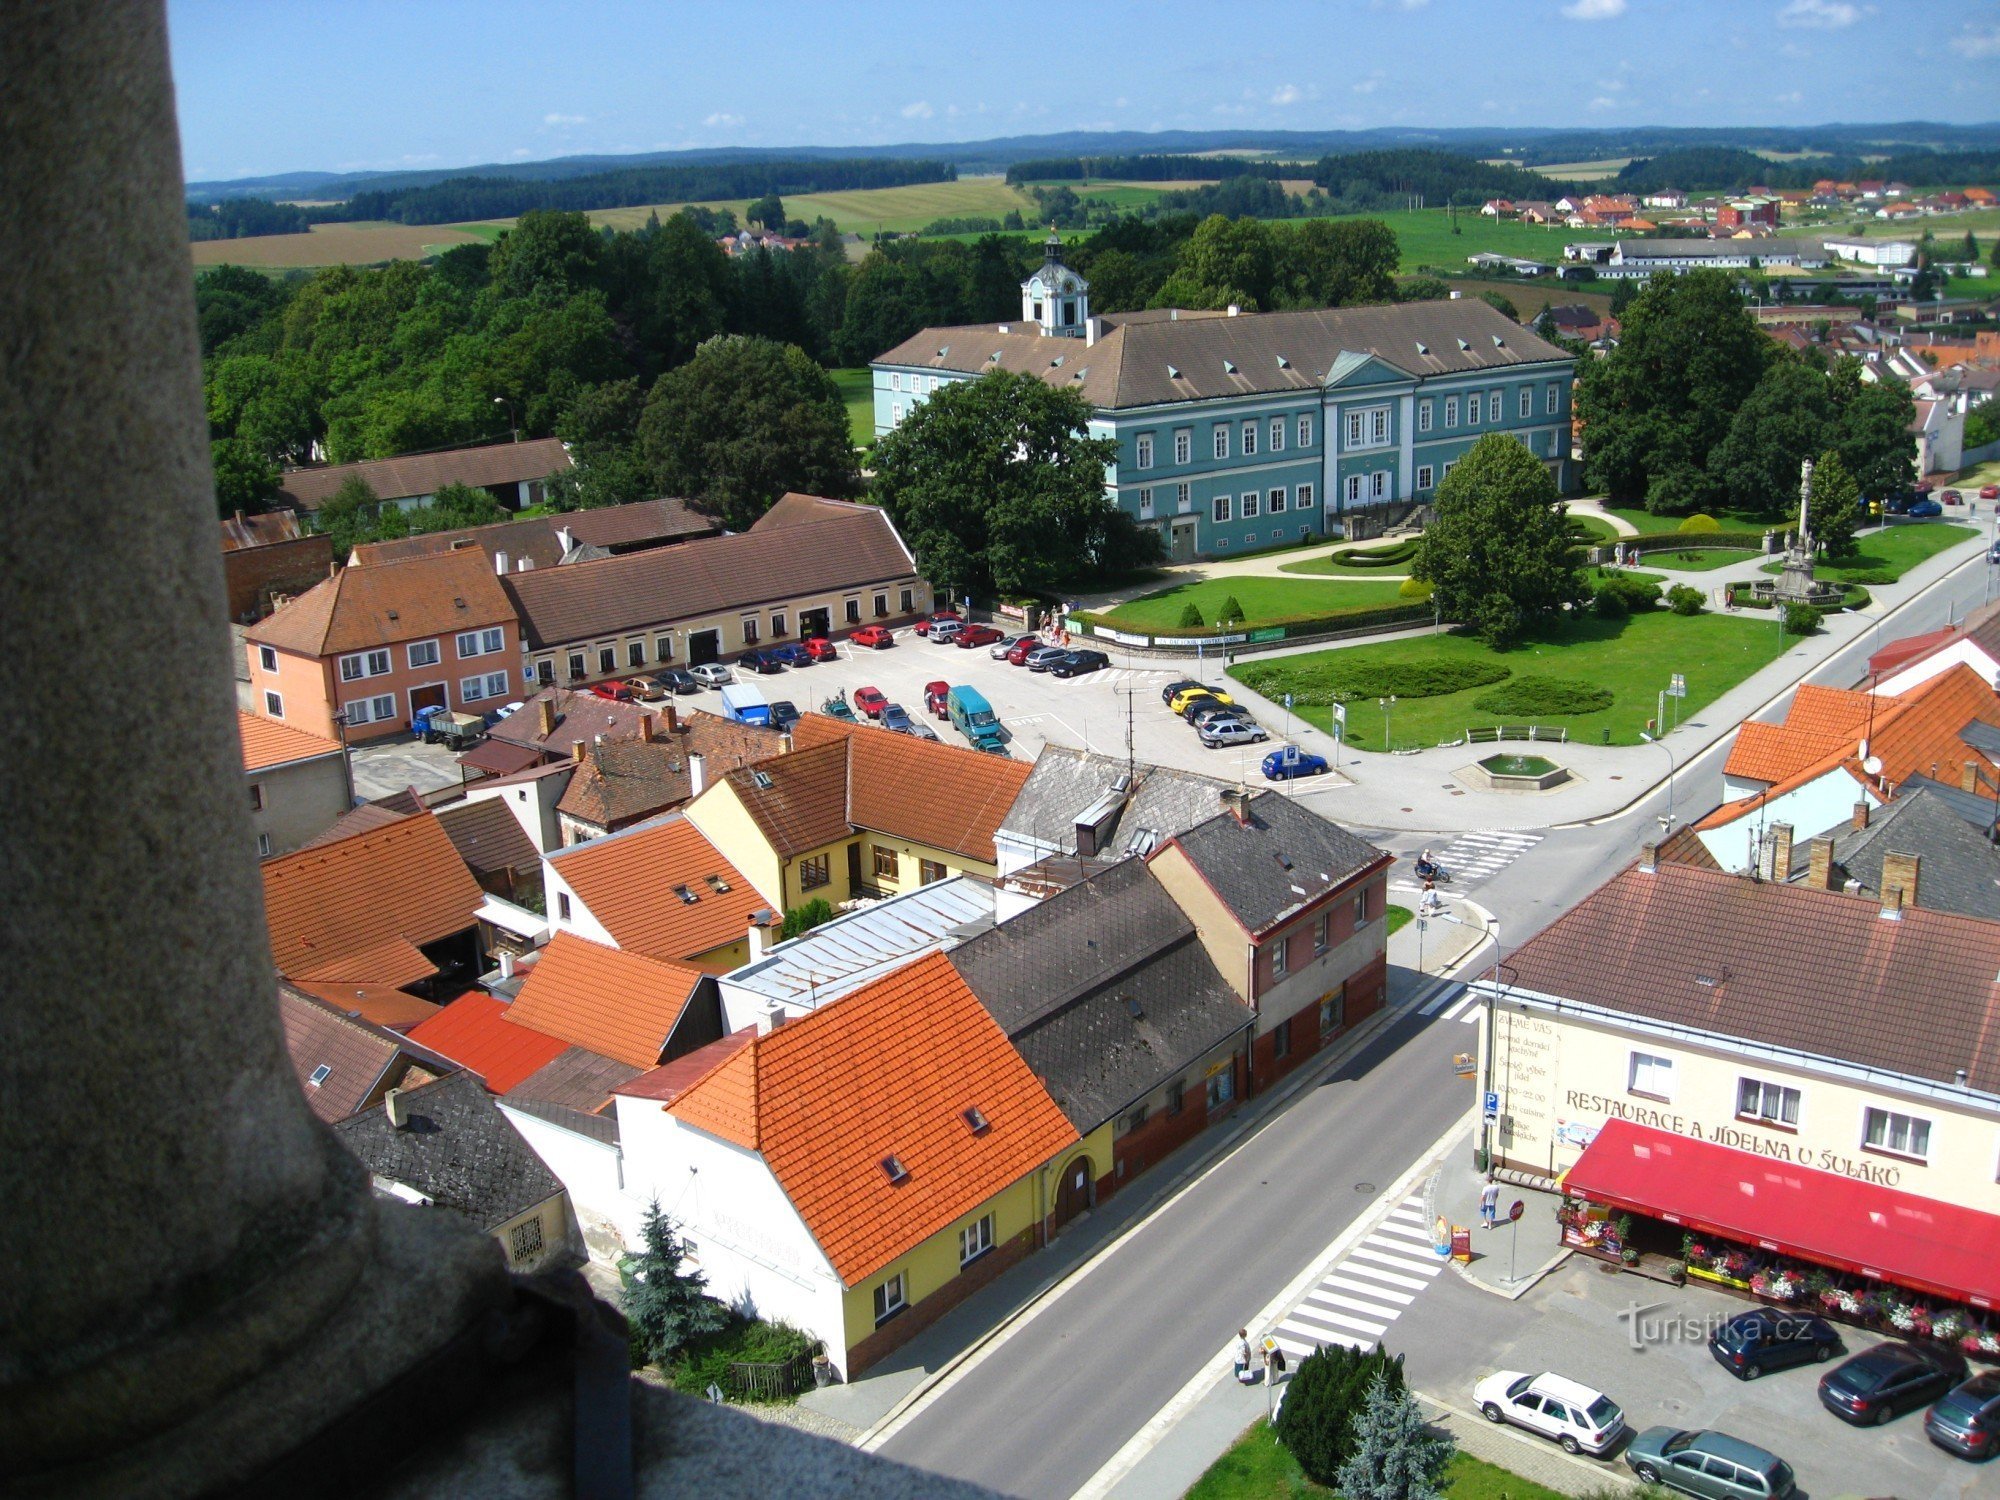 Dačice - view from the tower of the church of St. Vavřine to Nový zámek